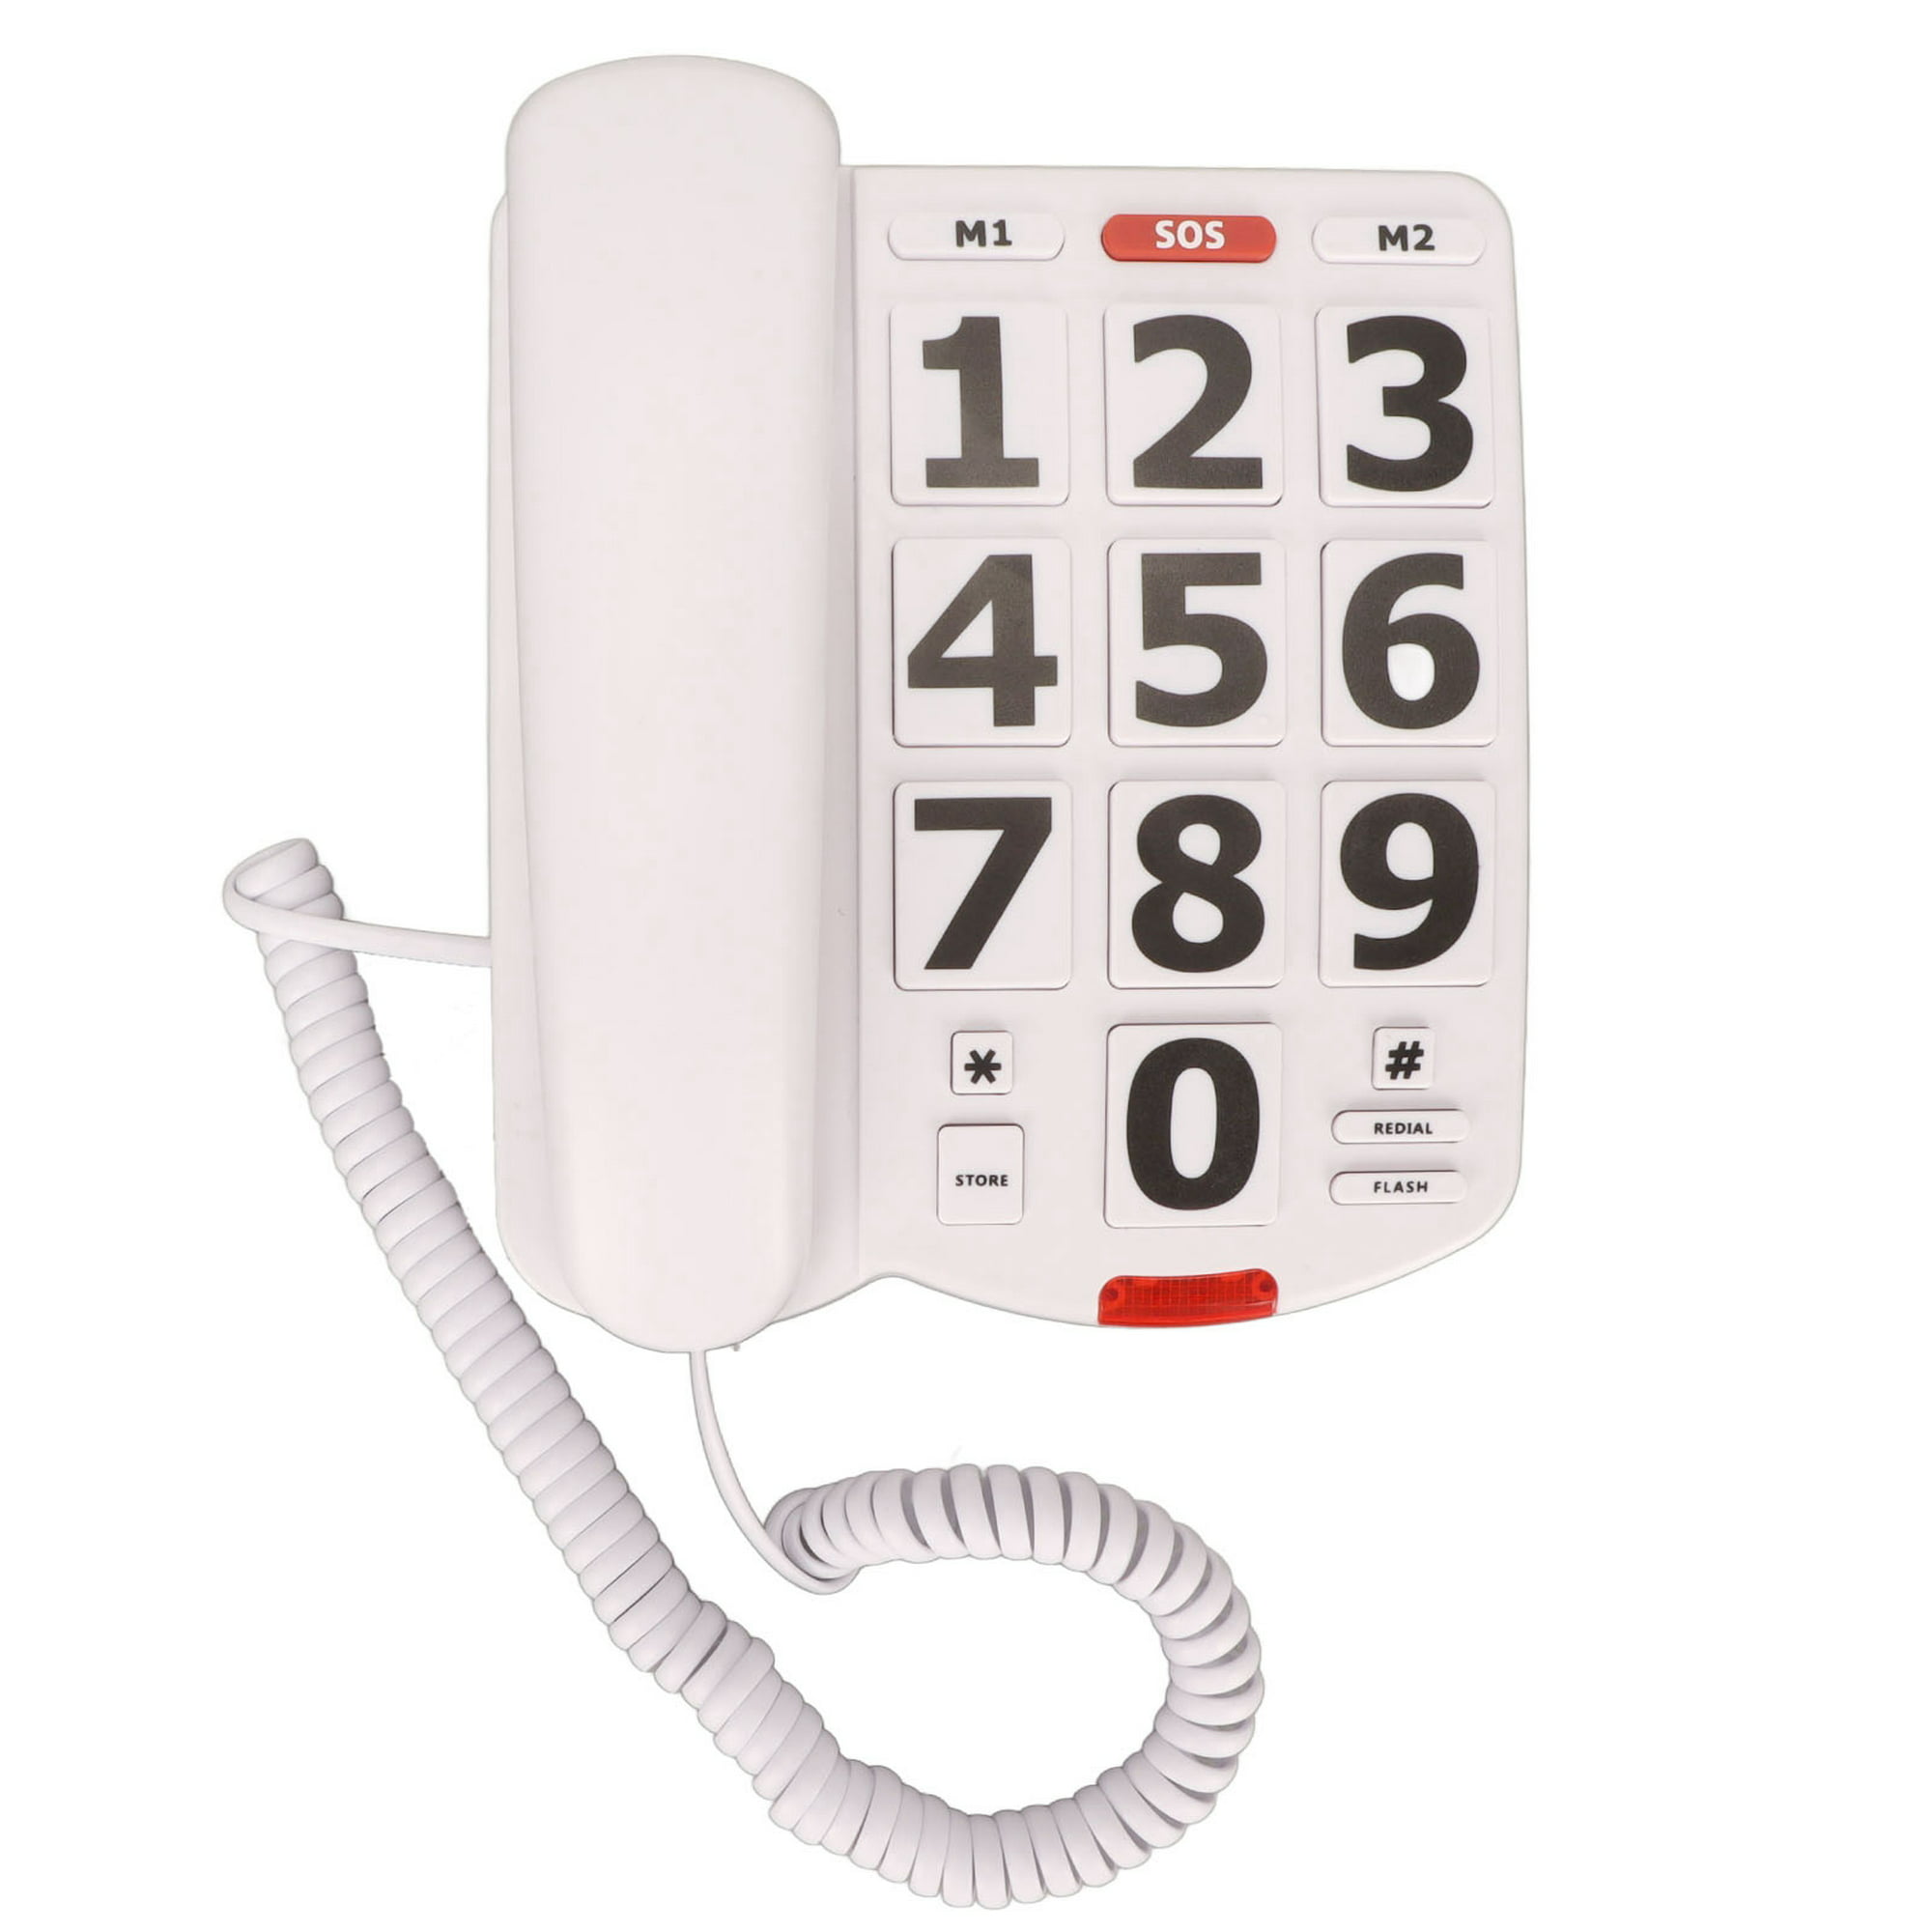 Teléfono fijo de botones grandes con sonido amplificado para personas  mayores y usuarios con baja visión